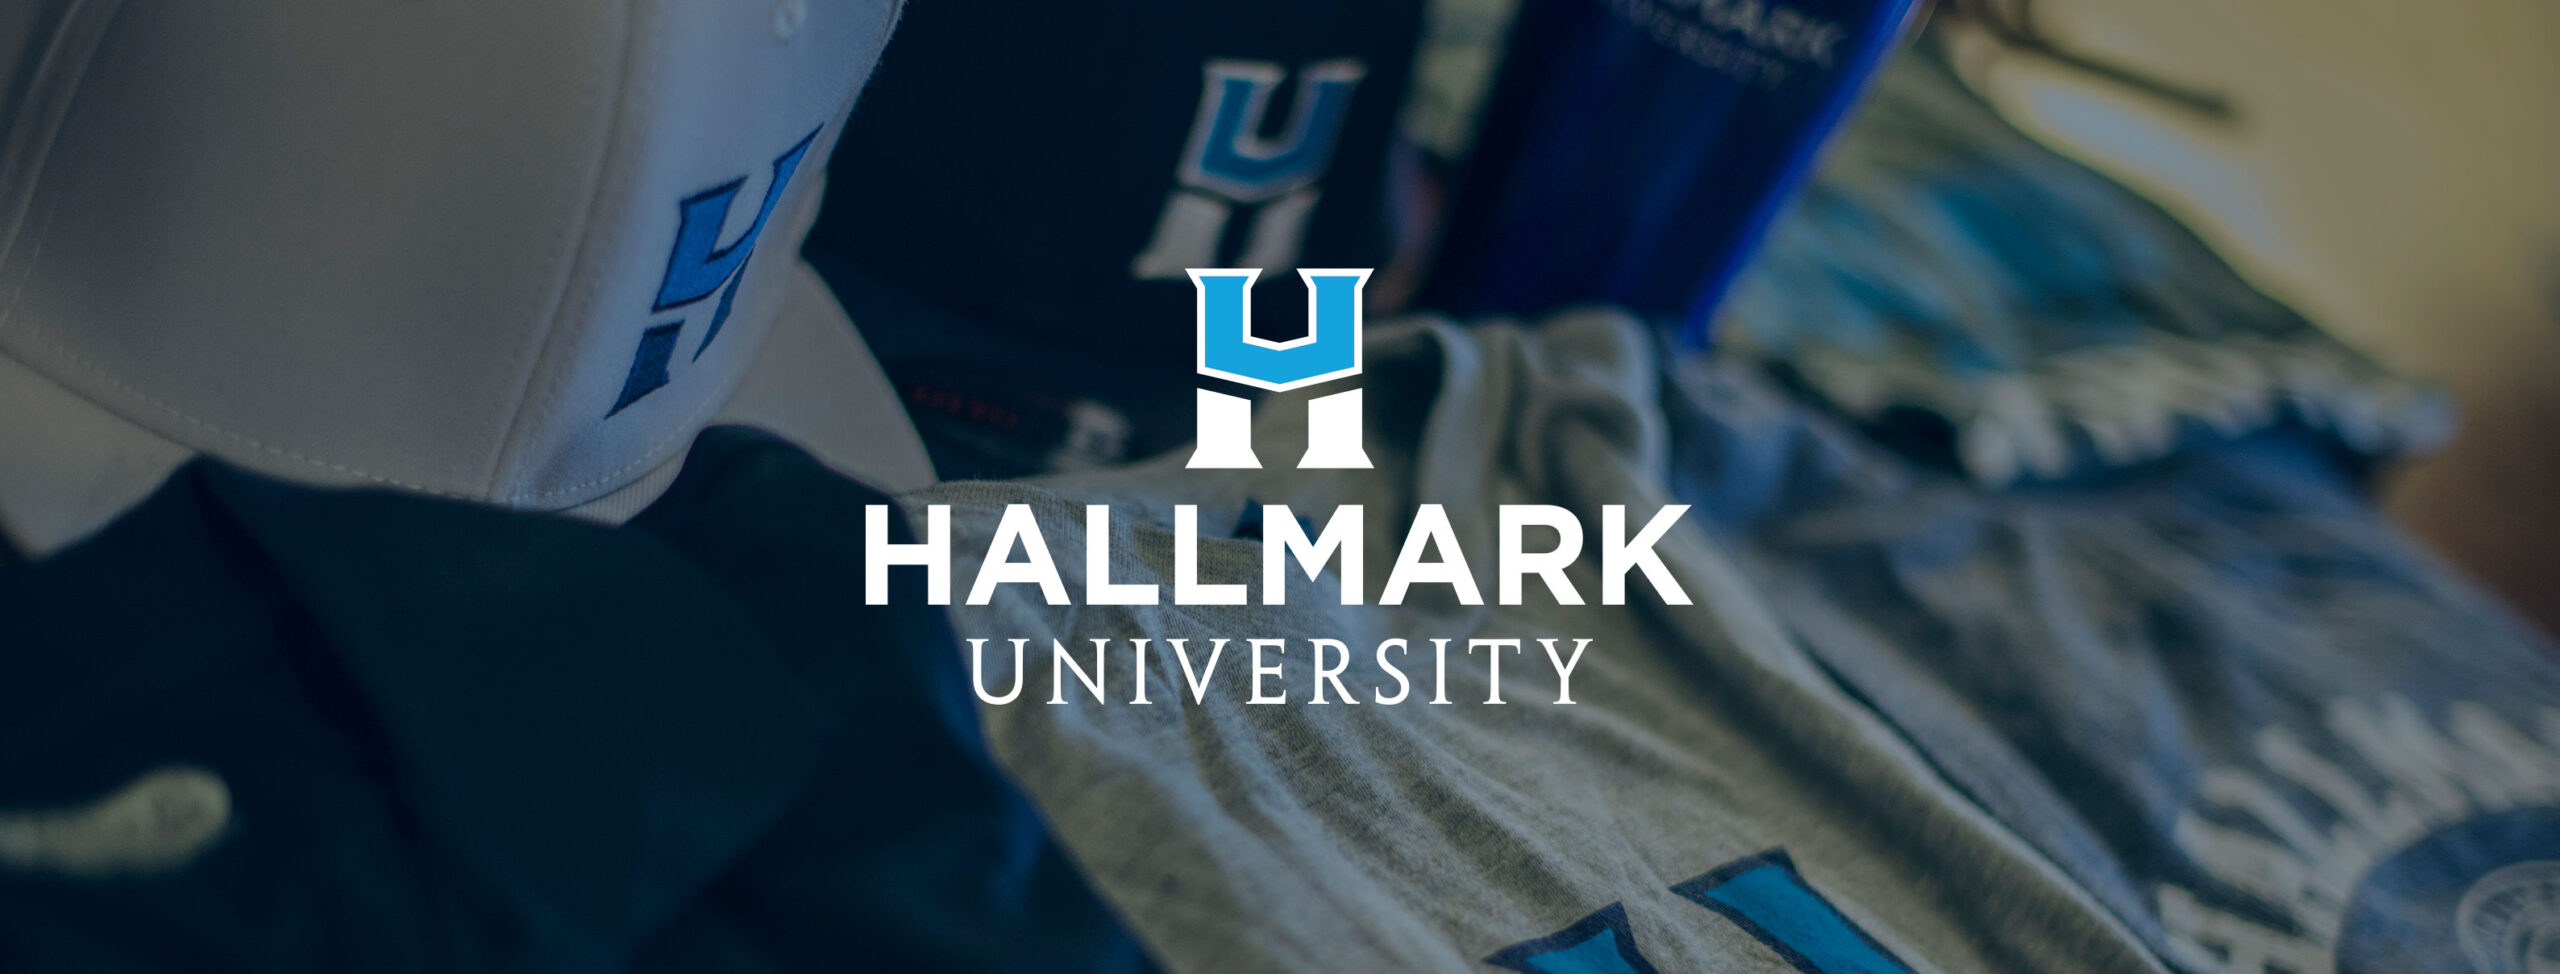 hallmark university rite